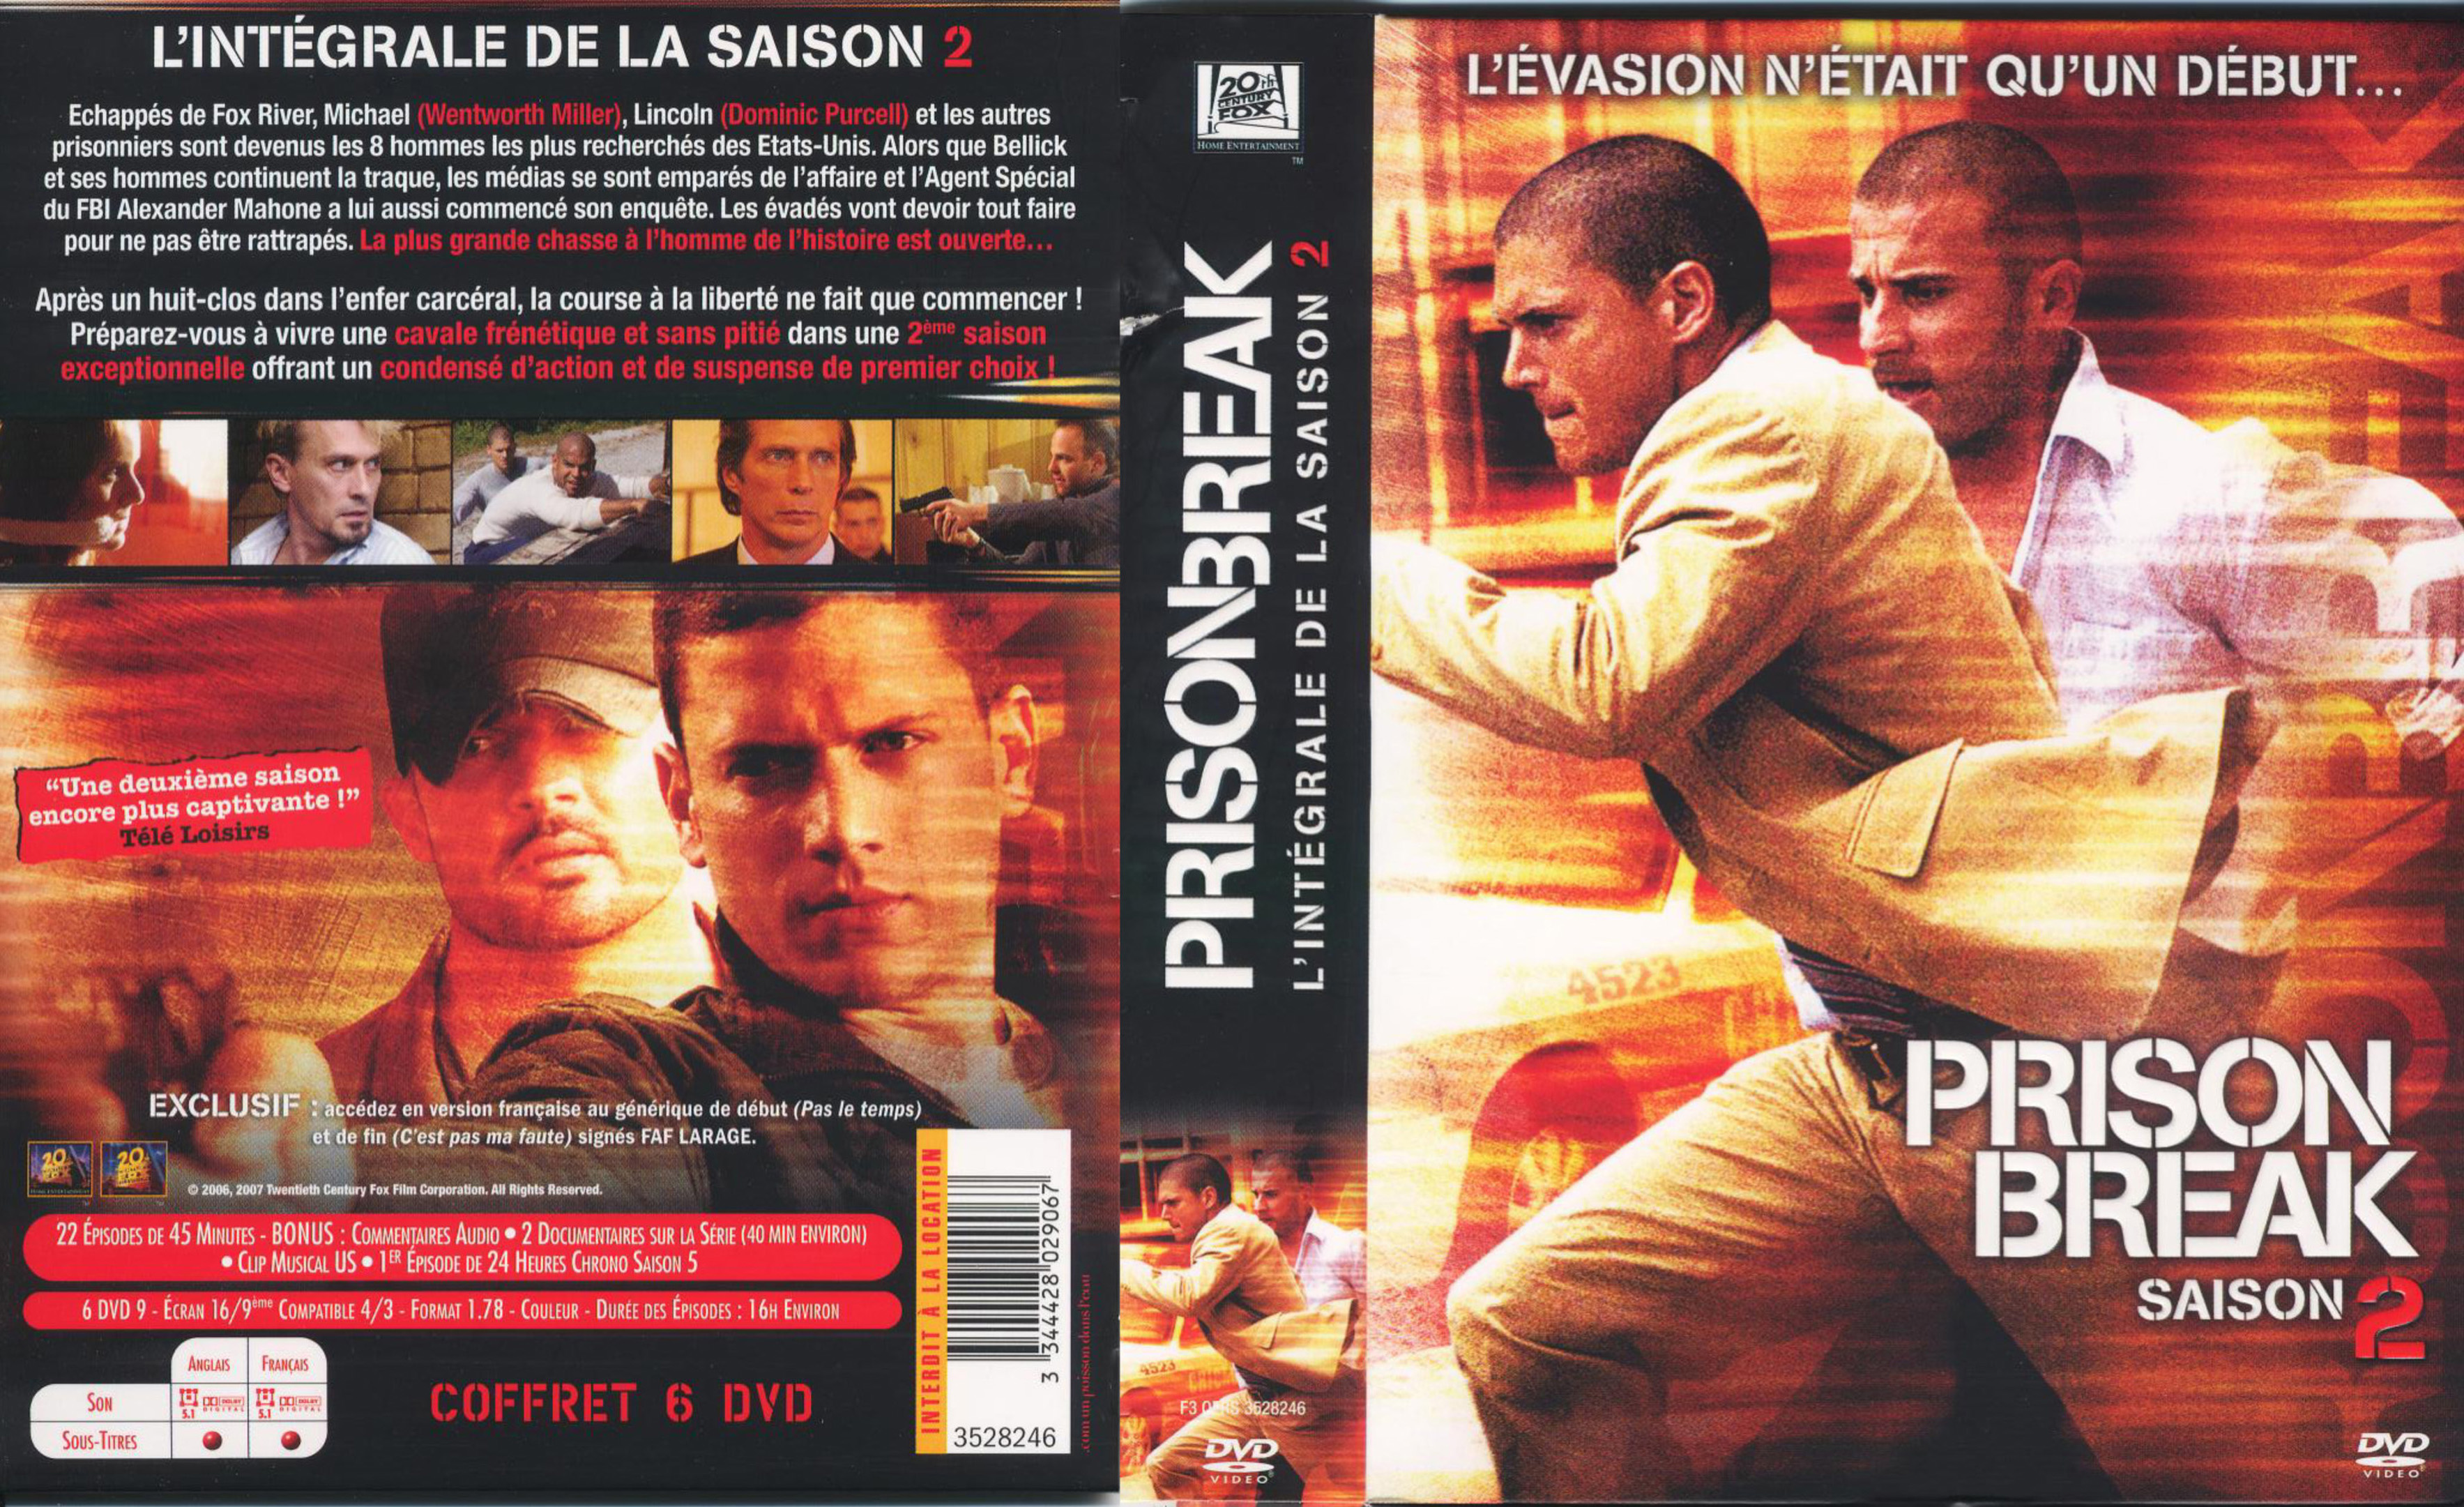 Jaquette DVD Prison break saison 2 COFFRET